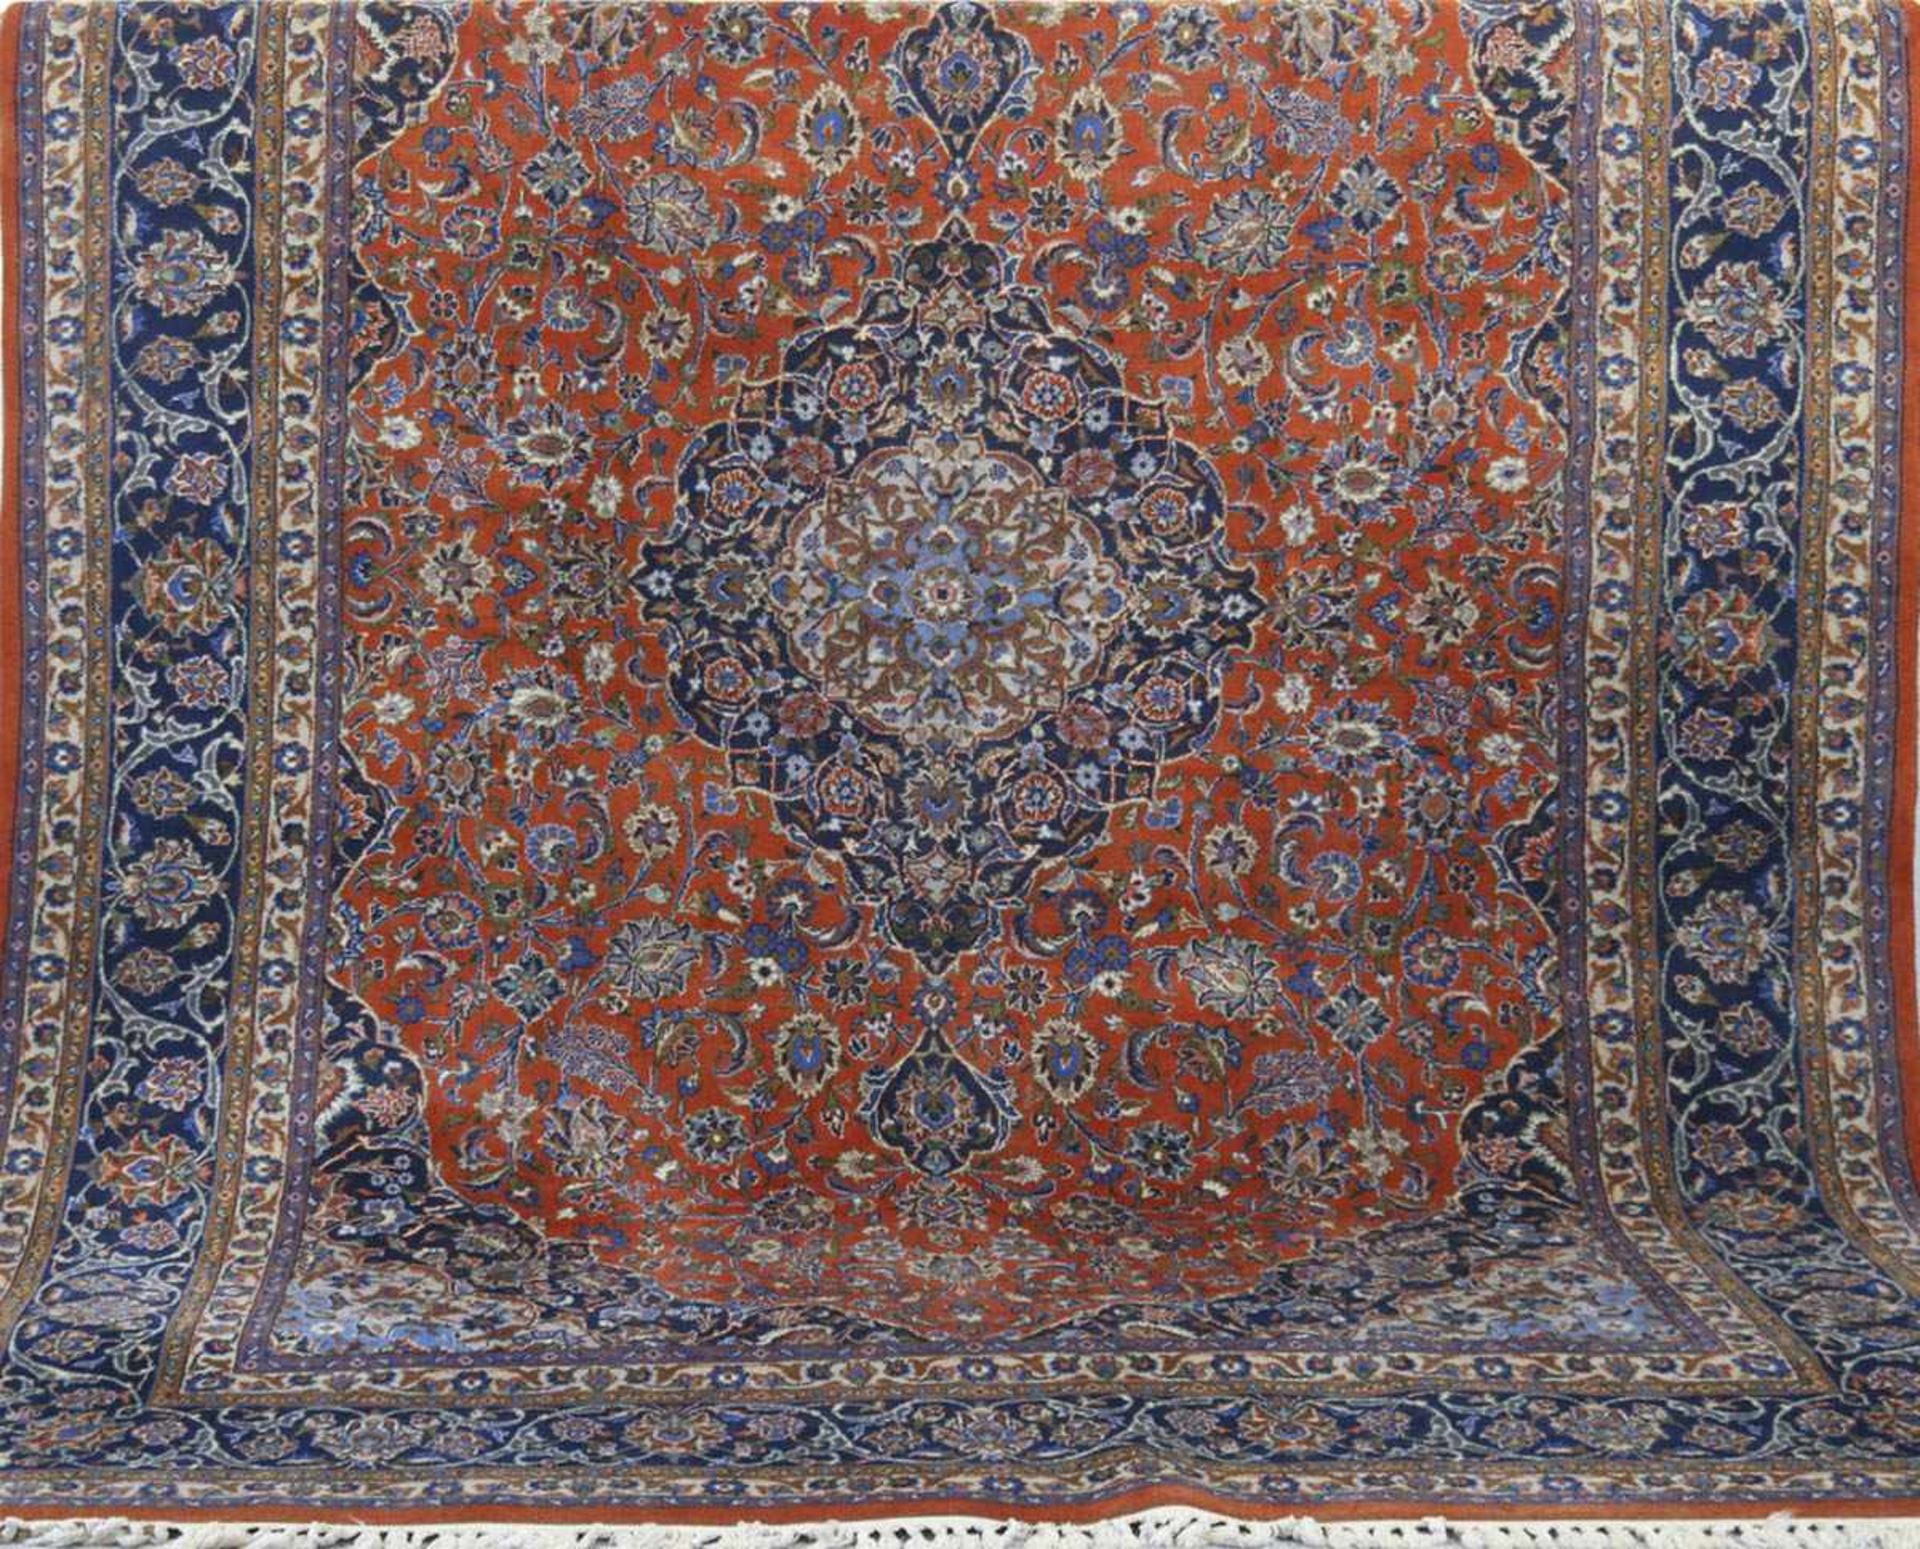 Keschan, Persien, Schurwolle, rot-/ blaugrundig, mit zentralem Medaillon und floralen